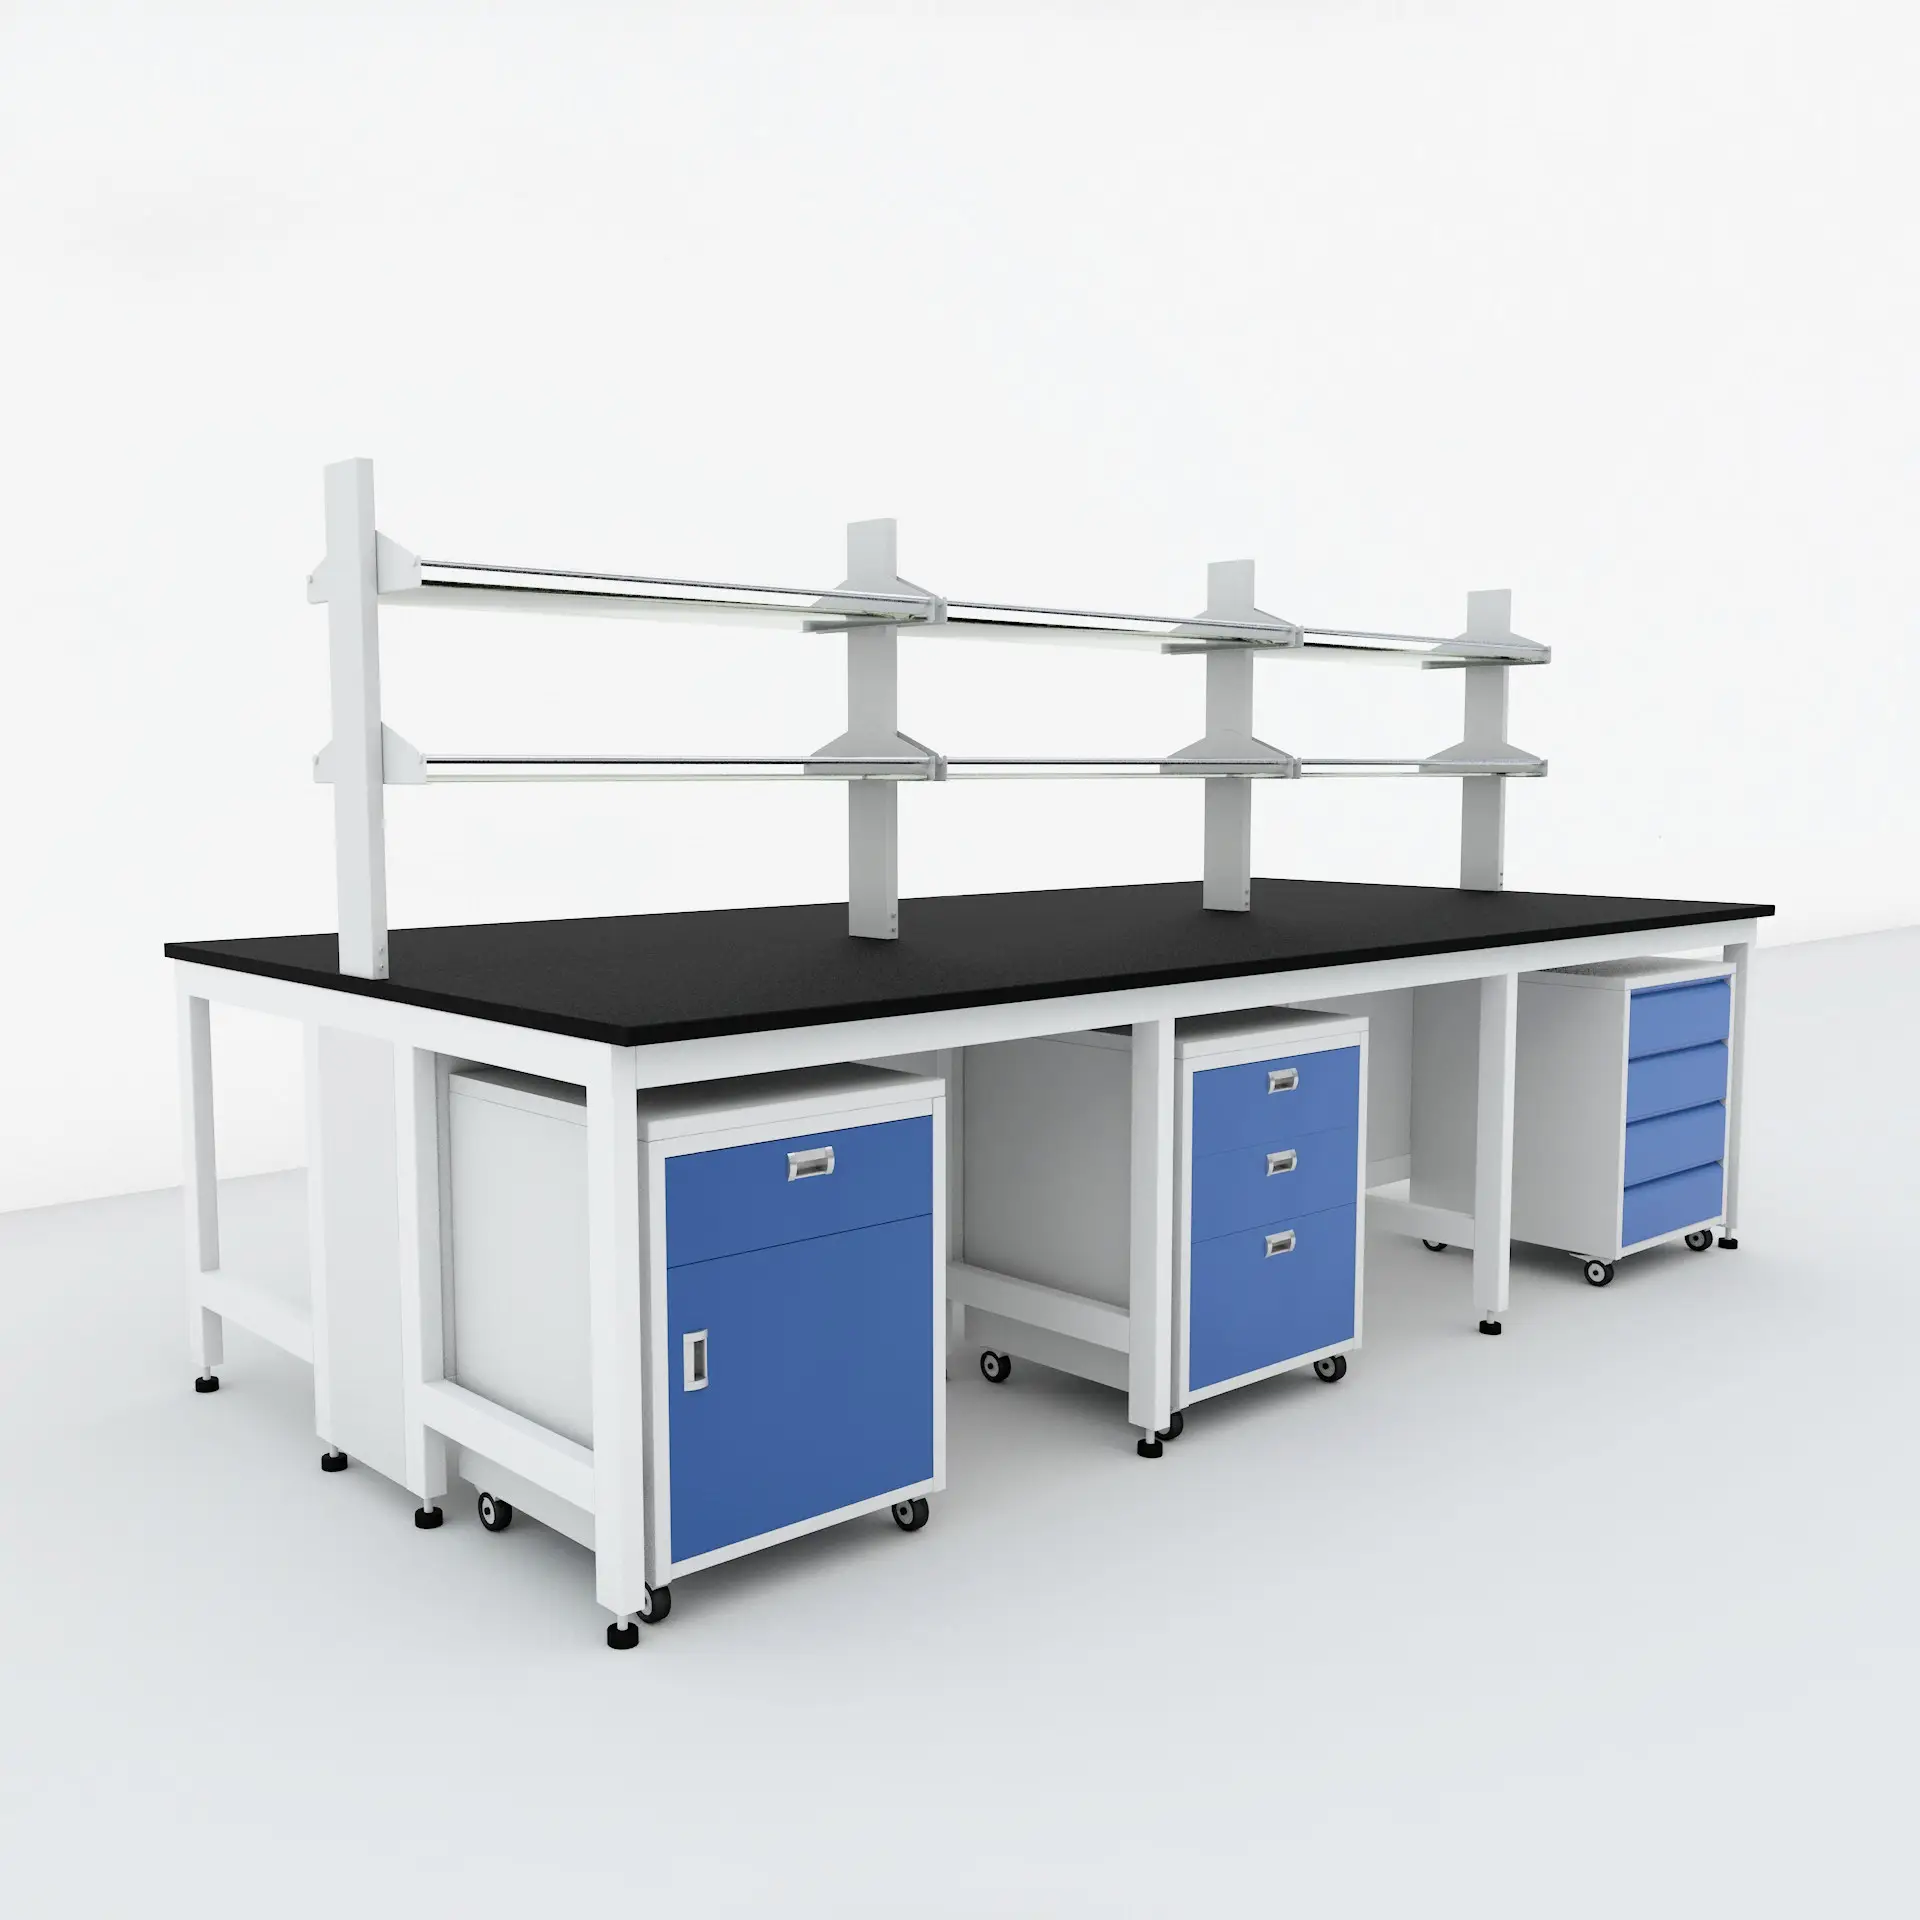 وحدات مختبر مقعد عمل 10ft طاولة العمل تستخدم مرنة مختبرات يمكن تخصيص و مصممة خصيصا